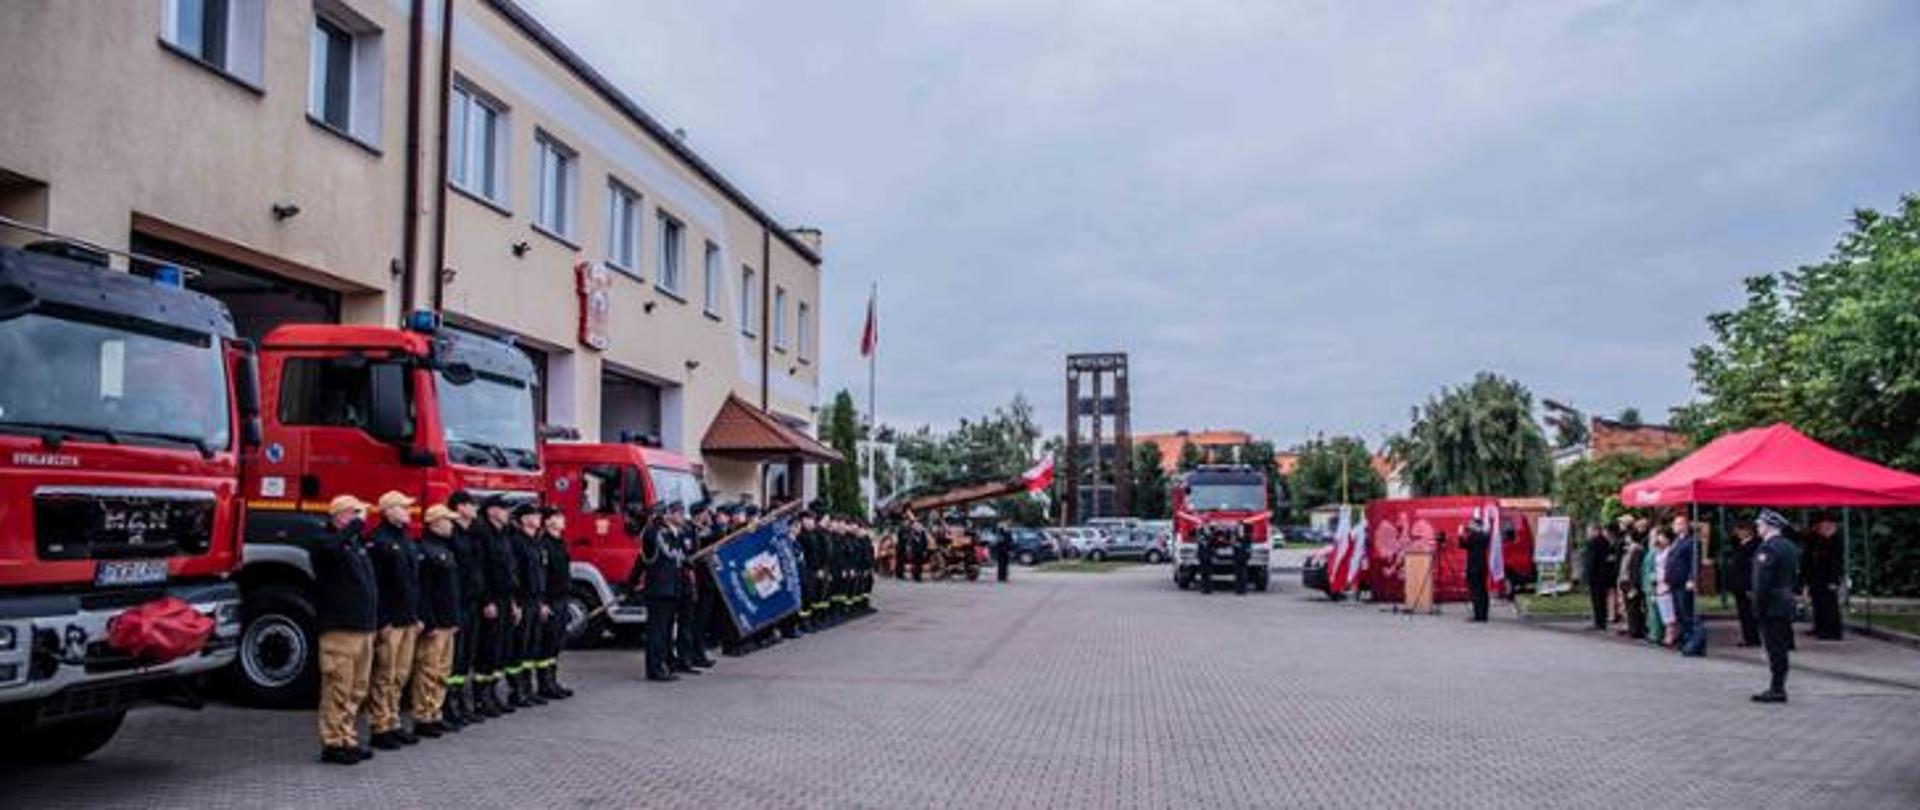 Zastępca wielkopolskiego komendanta wojewódzkiego PSP uczestniczył w przekazaniu samochodu dla OSP Krotoszyn
